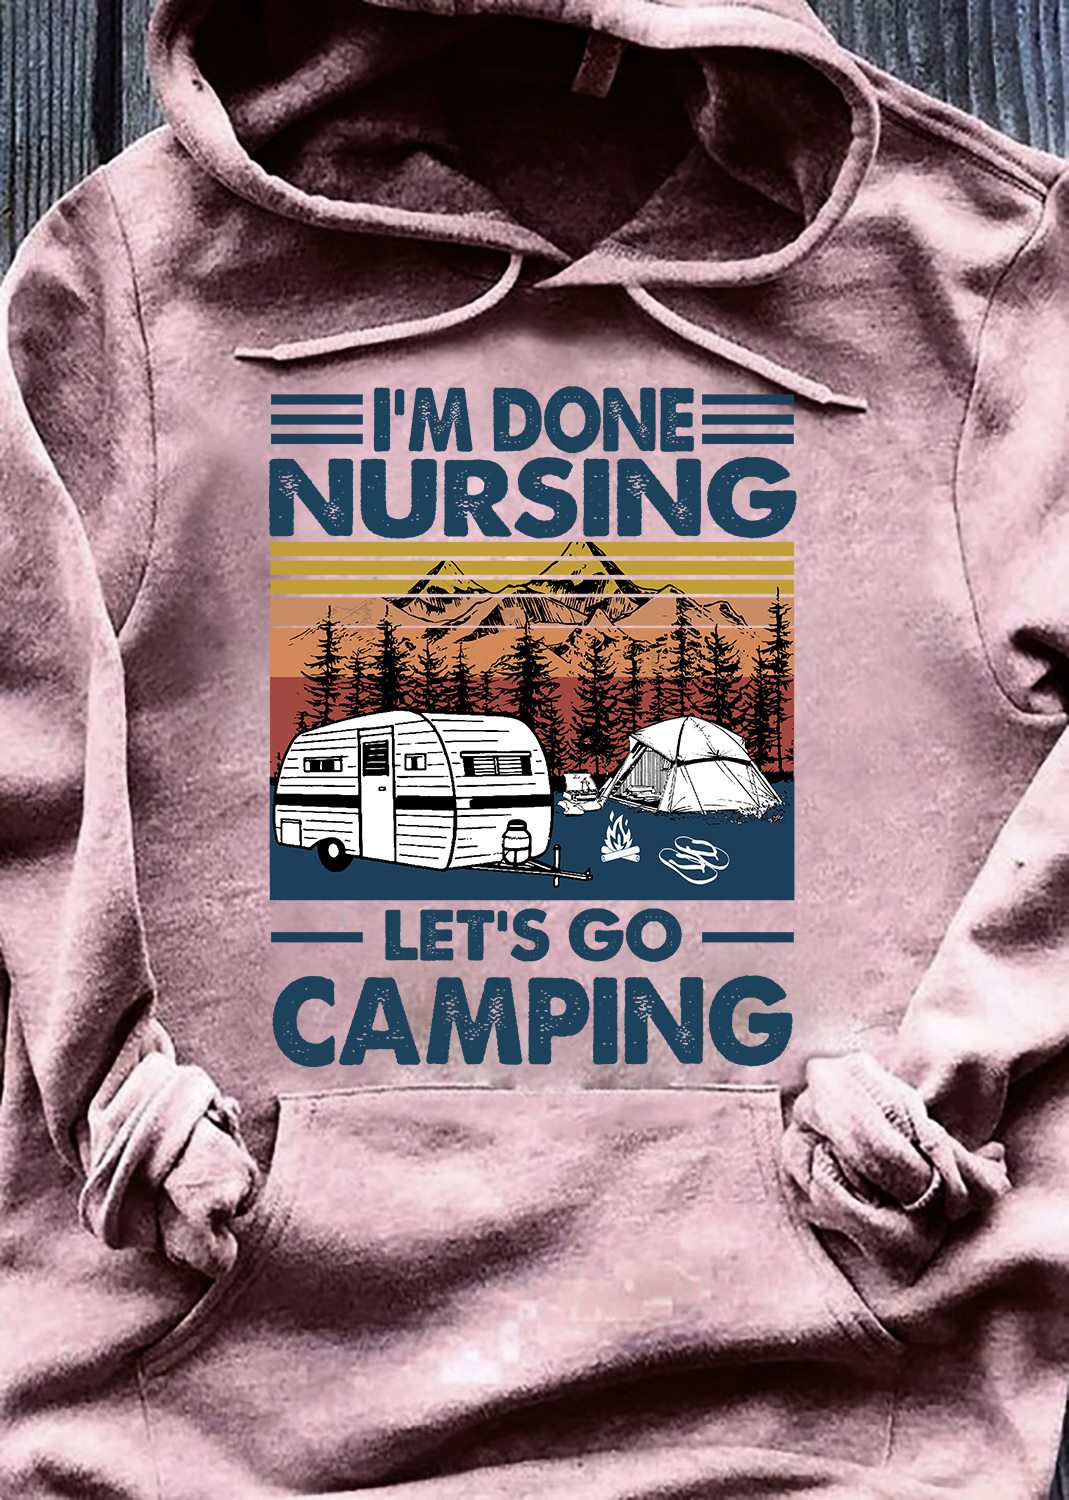 I'm done nursing let's go camping